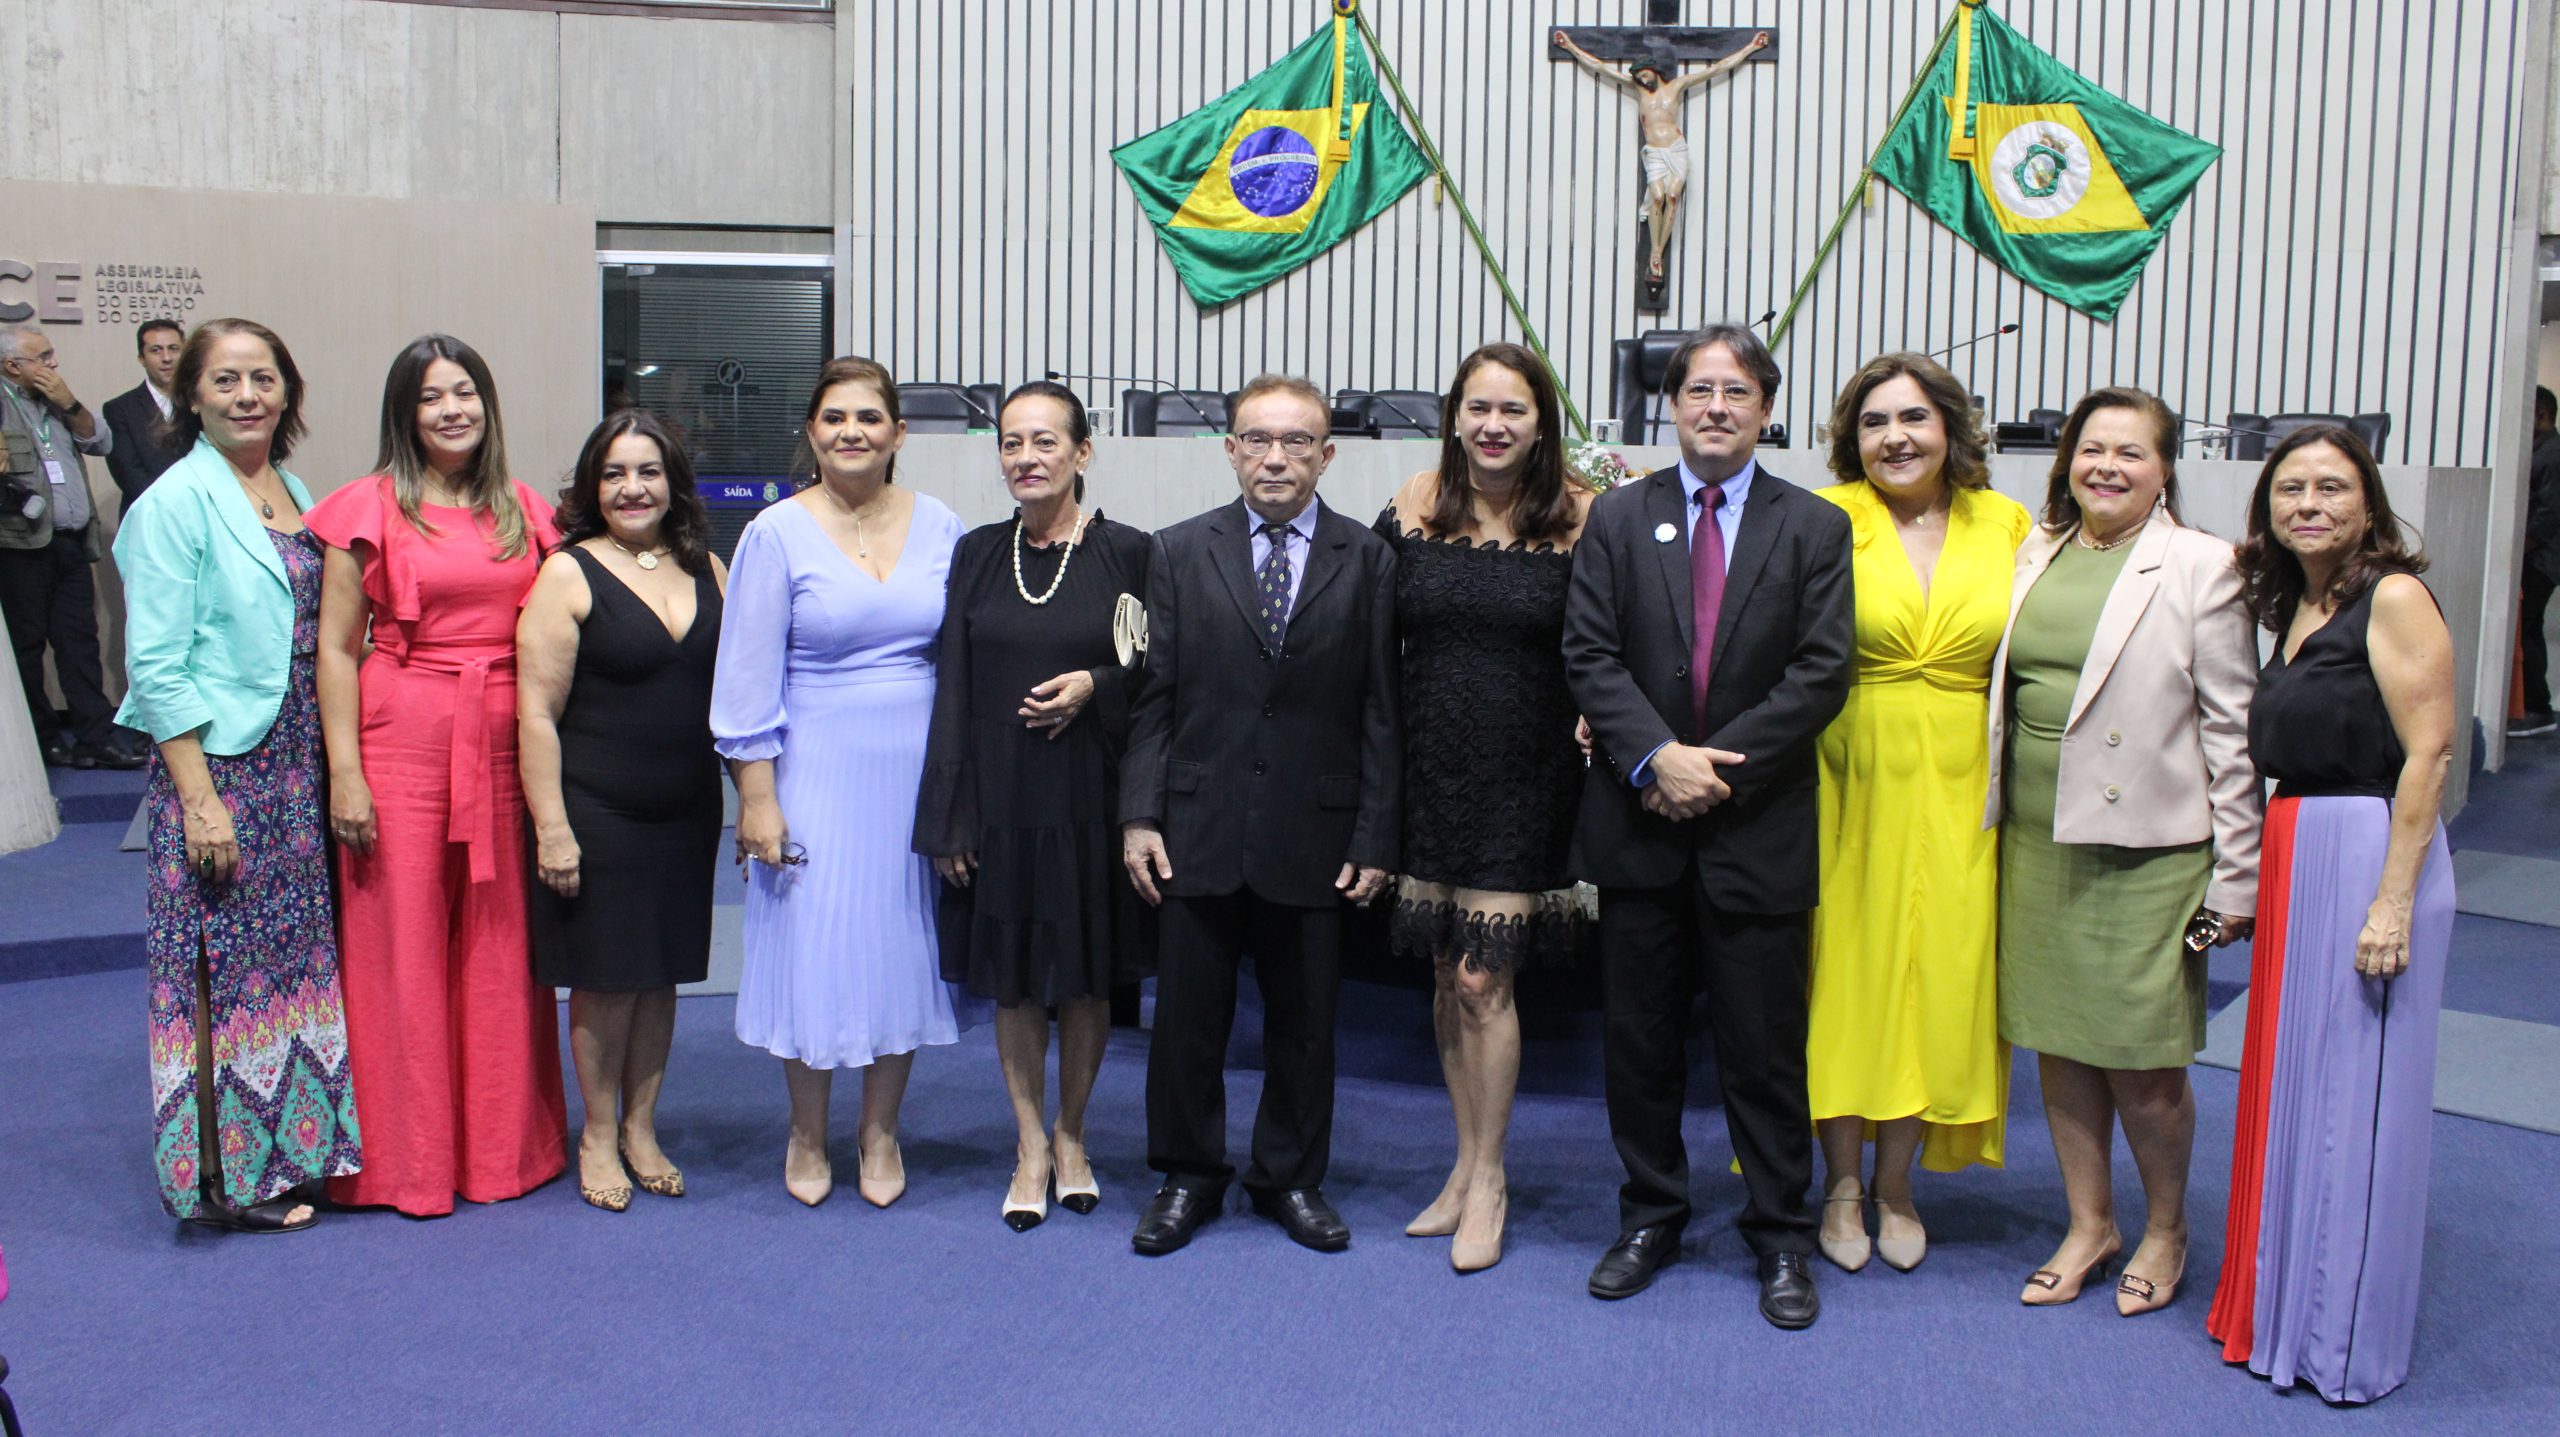 Escola de Saúde Pública do Ceará recebe homenagem pela trajetória de 30 anos na Assembleia Legislativa